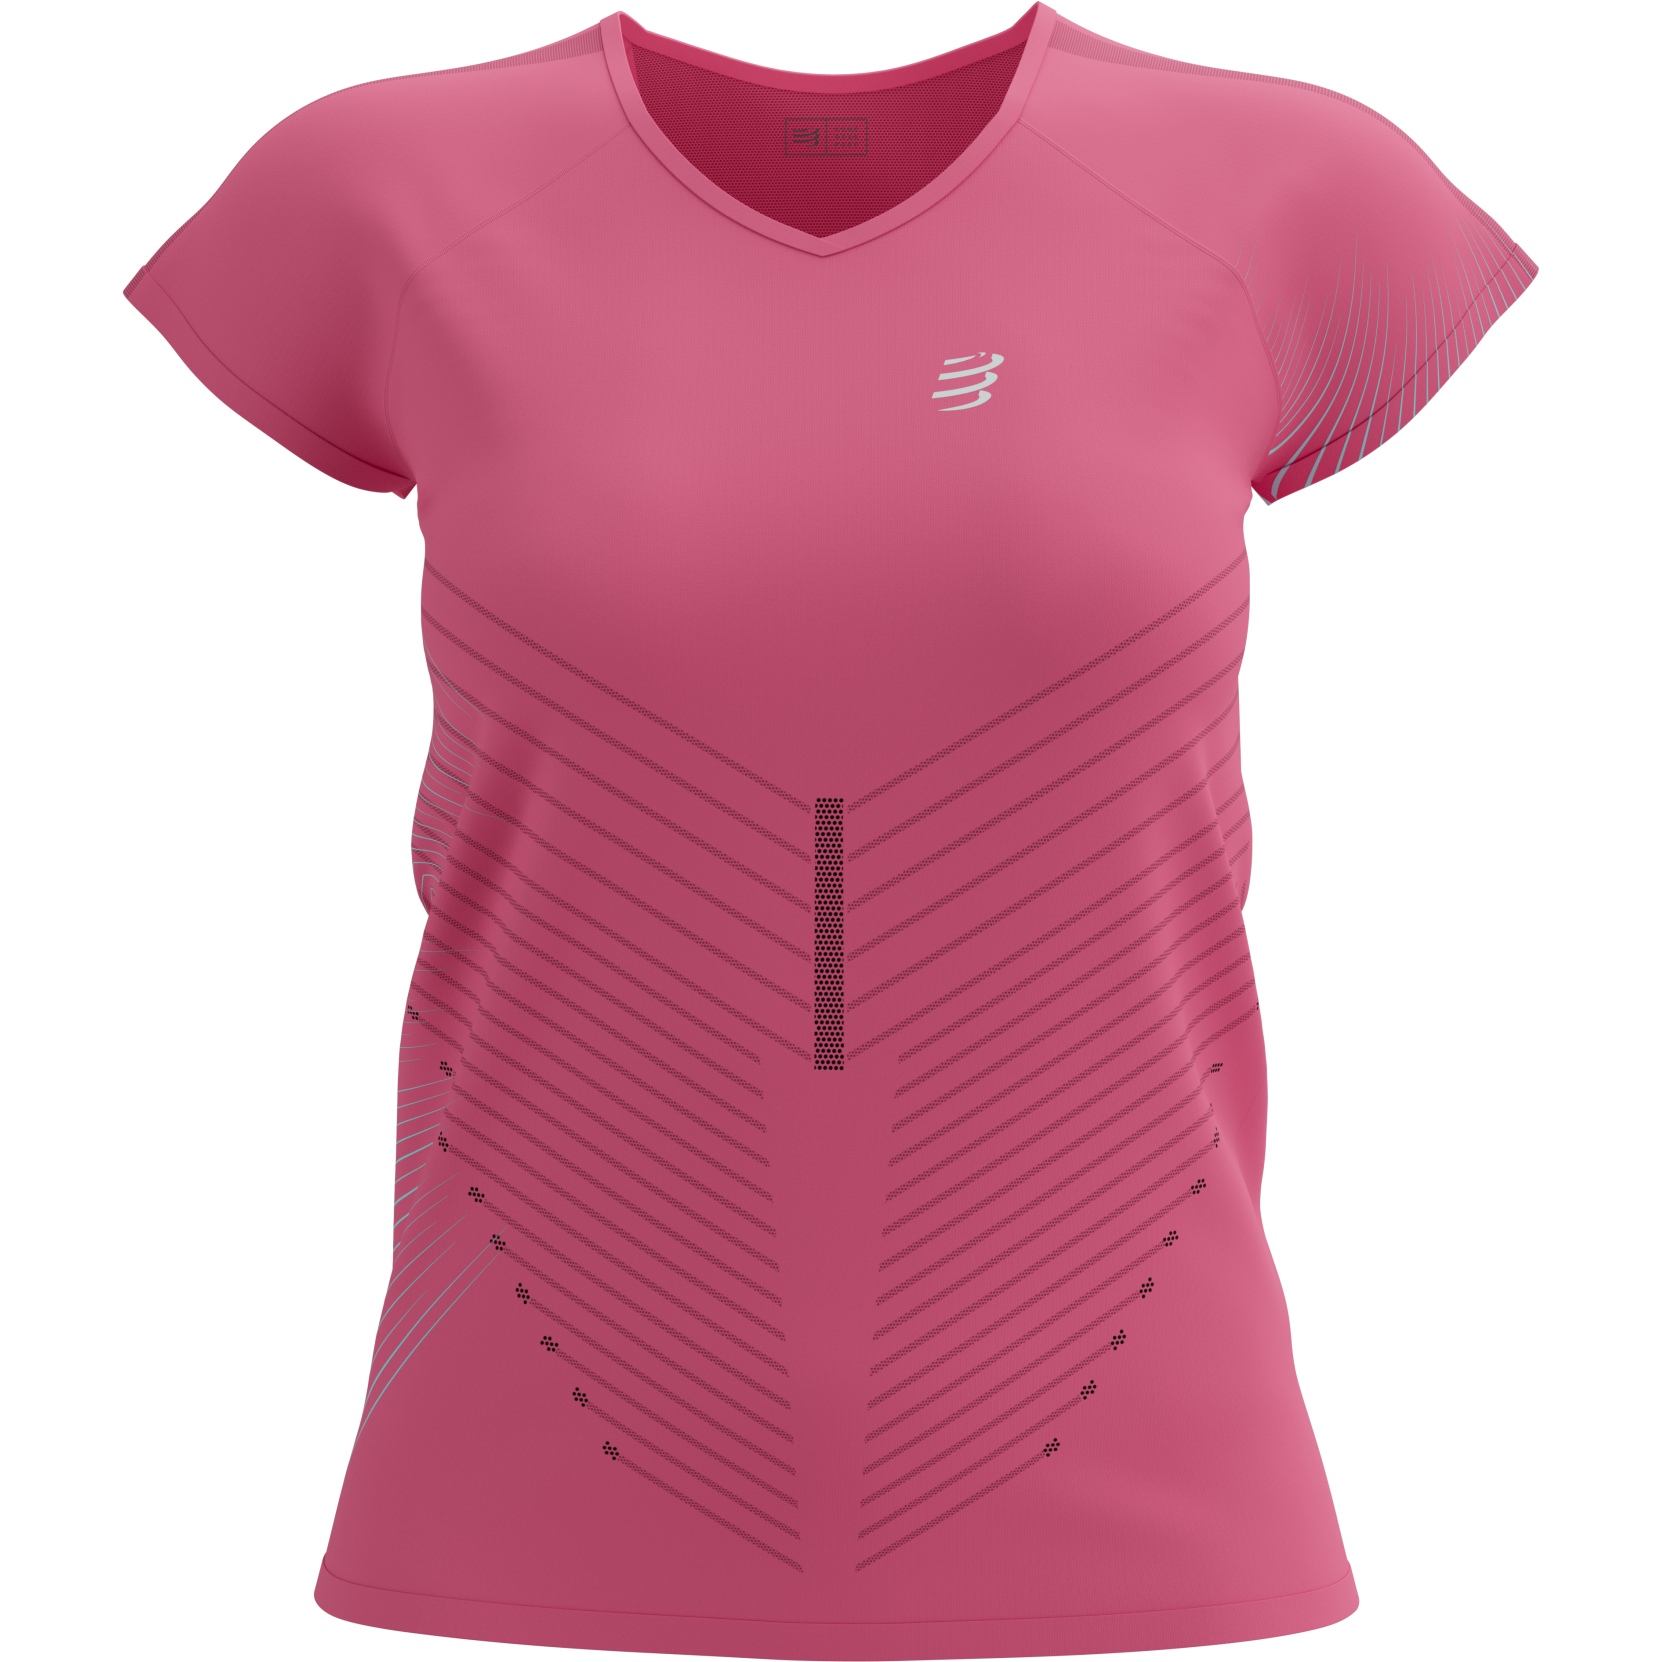 Productfoto van Compressport Performance Dames T-Shirt - hot pink/aqua